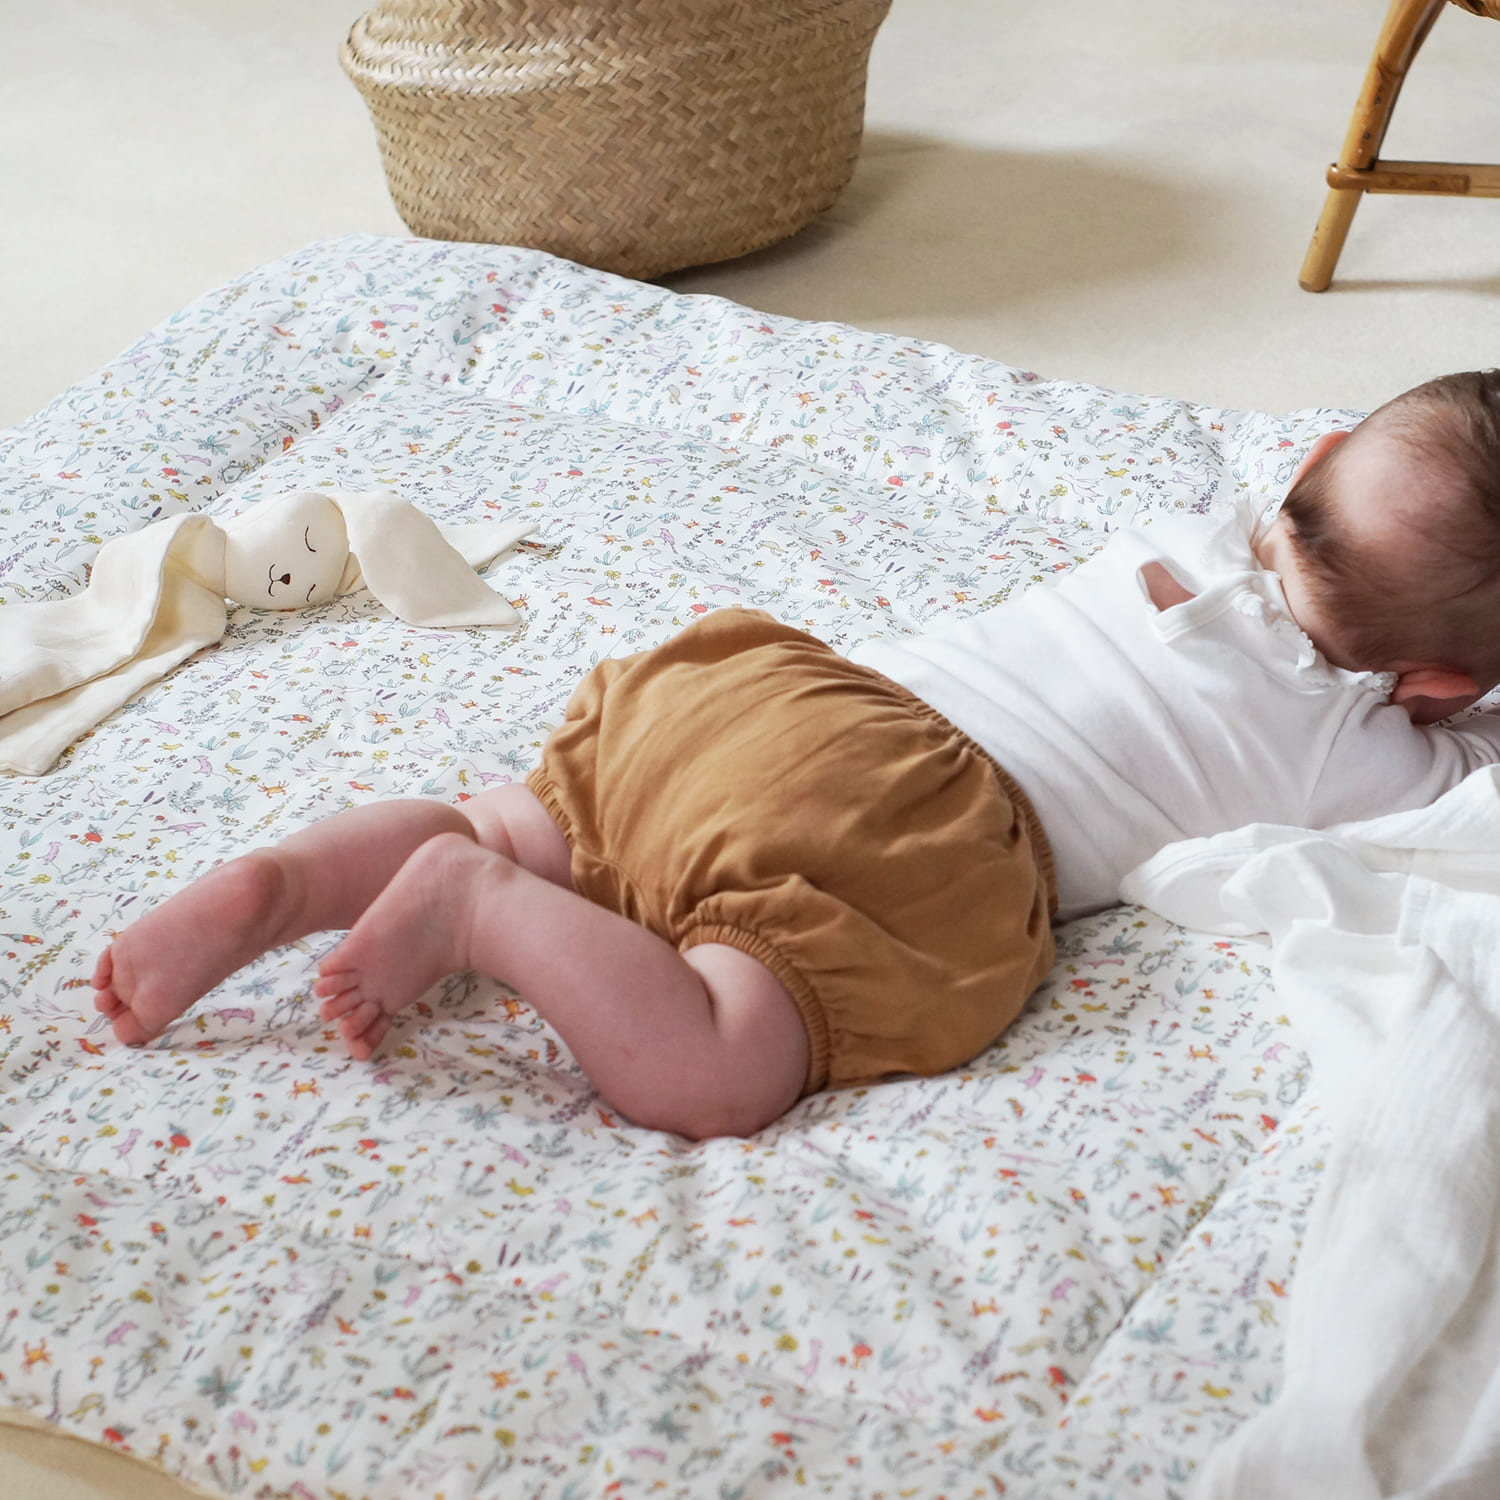 Quel tapis d'éveil pour bébé ?